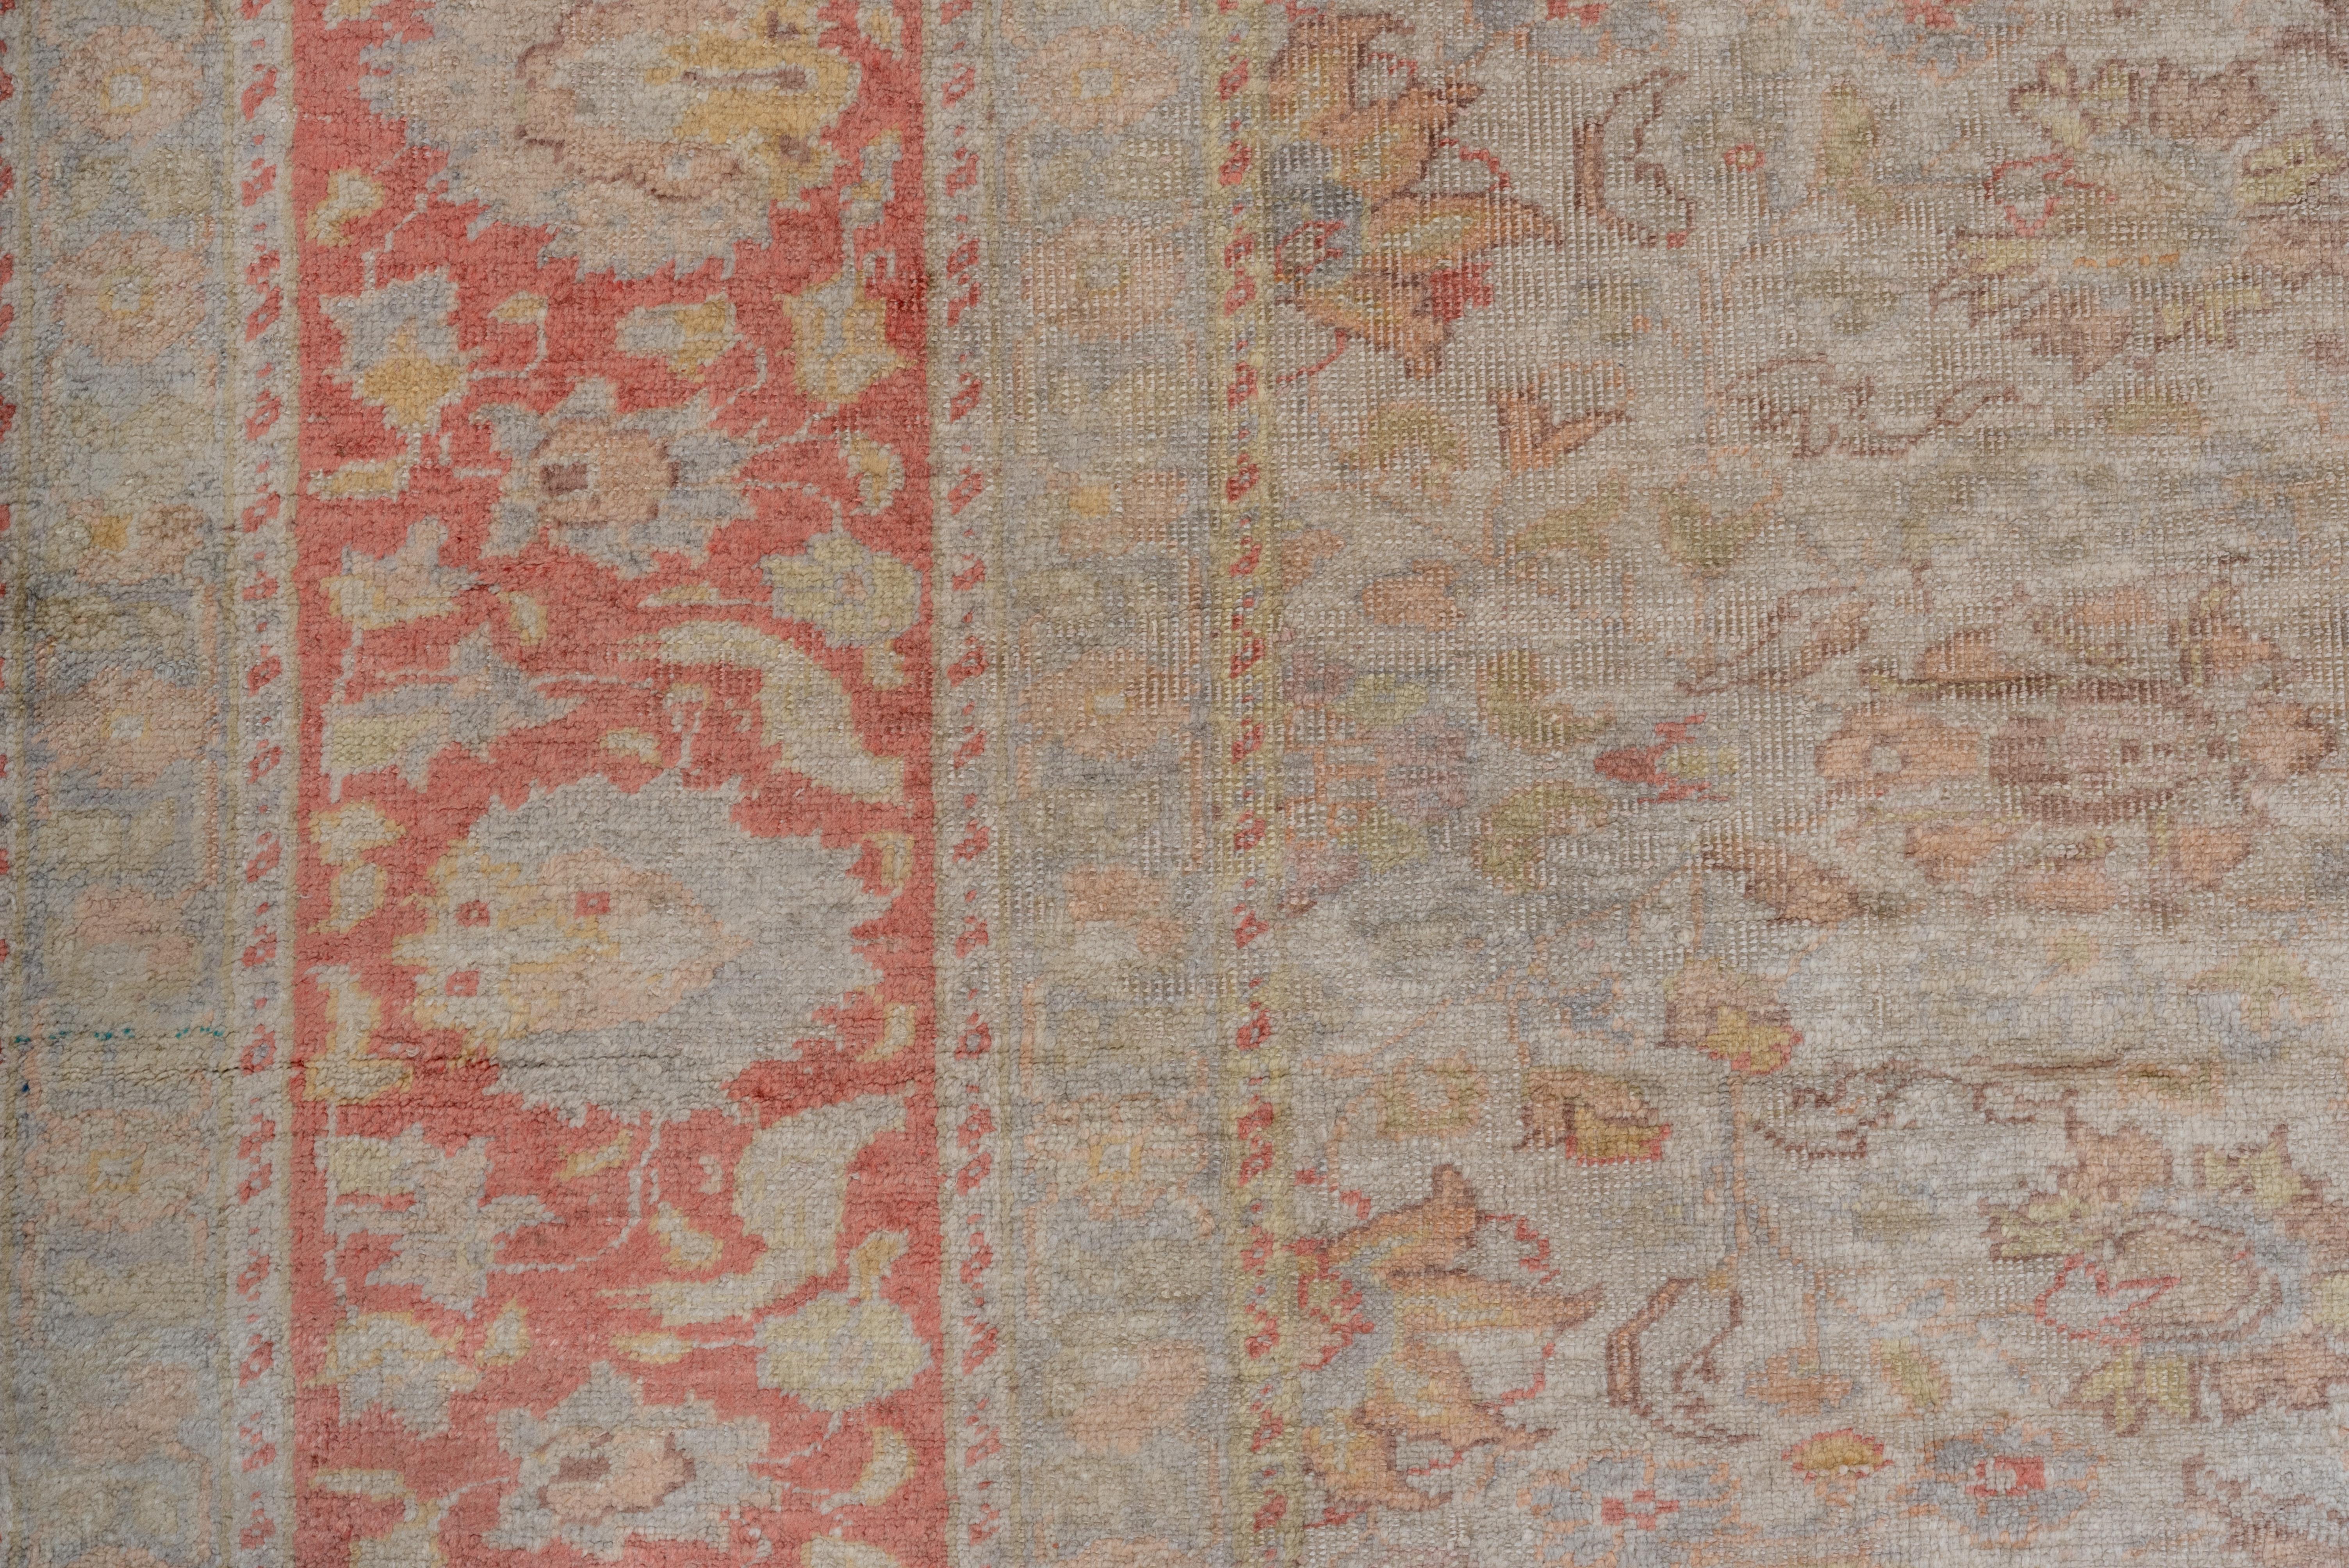 Dieser mäßig gewebte osttürkische Teppich zeigt ein offenes Allover-Muster aus Rosetten, ovalen Palmetten und stilisierten Blättern, akzentuiert in Strohgelb, Grün und Braun, auf einem beige-cremefarbenen Grund. Korallenbordüre mit einfachen